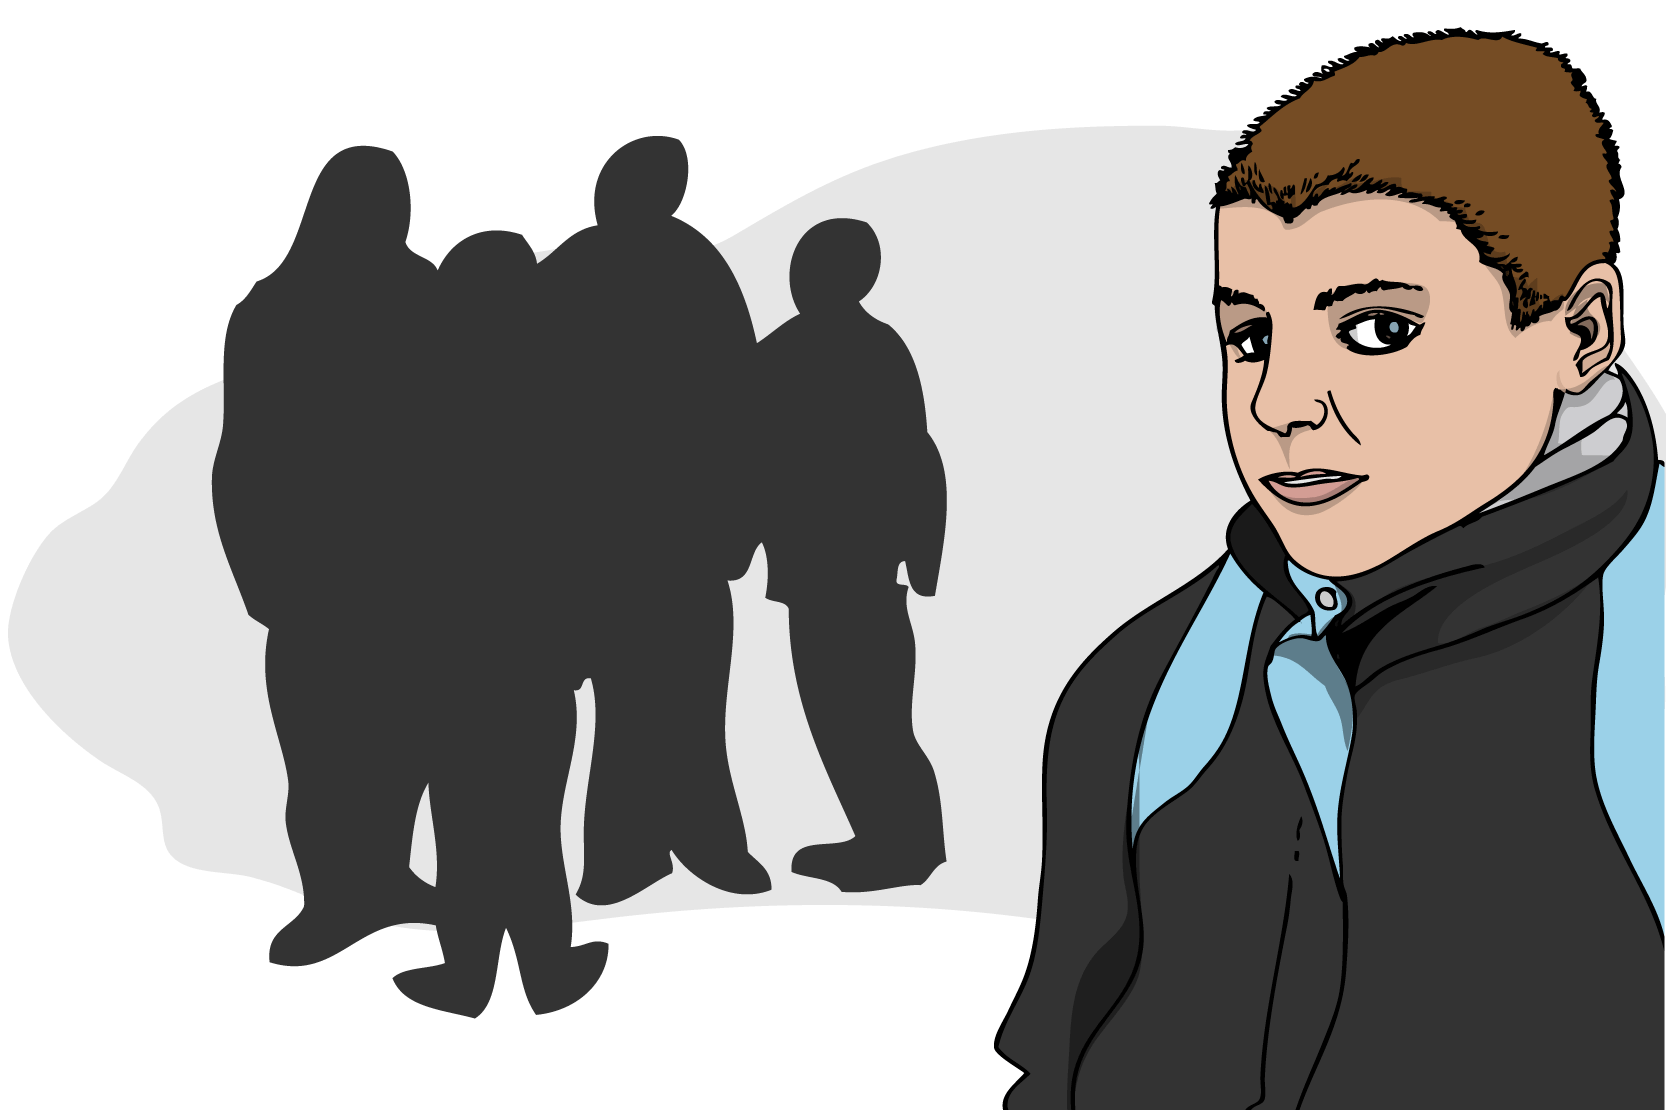 En kille ser ledsen ut och bakom honom står ett antal personer. Illustration 